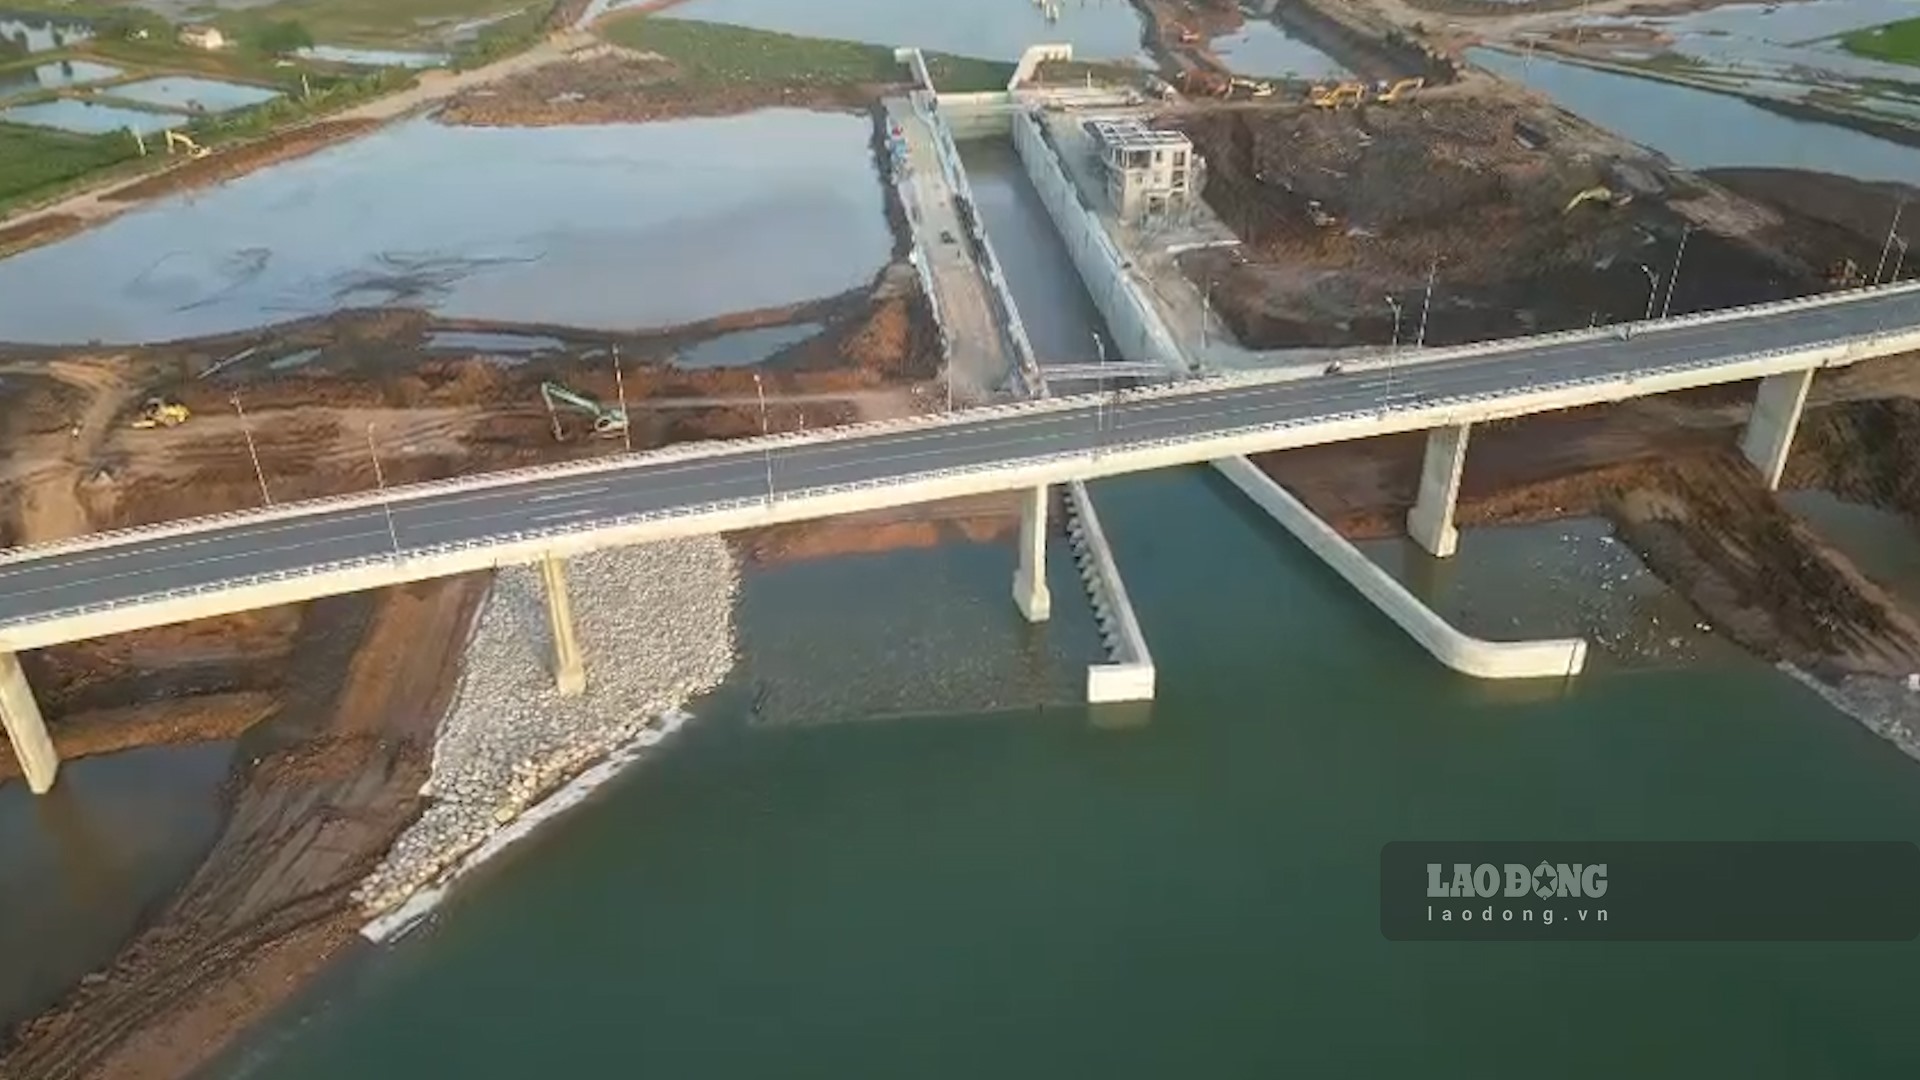 Do kênh đào chia cắt huyện Nghĩa Hưng thành 2 bờ nên chủ đầu tư phải thi công thêm một cây cầu vượt qua kênh. Cầu có chiều dài 777,9 m, tĩnh không thông thuyền 15 m, giúp kết nối dân cư đôi bờ kênh và hoàn trả tuyến đường tỉnh 490C.